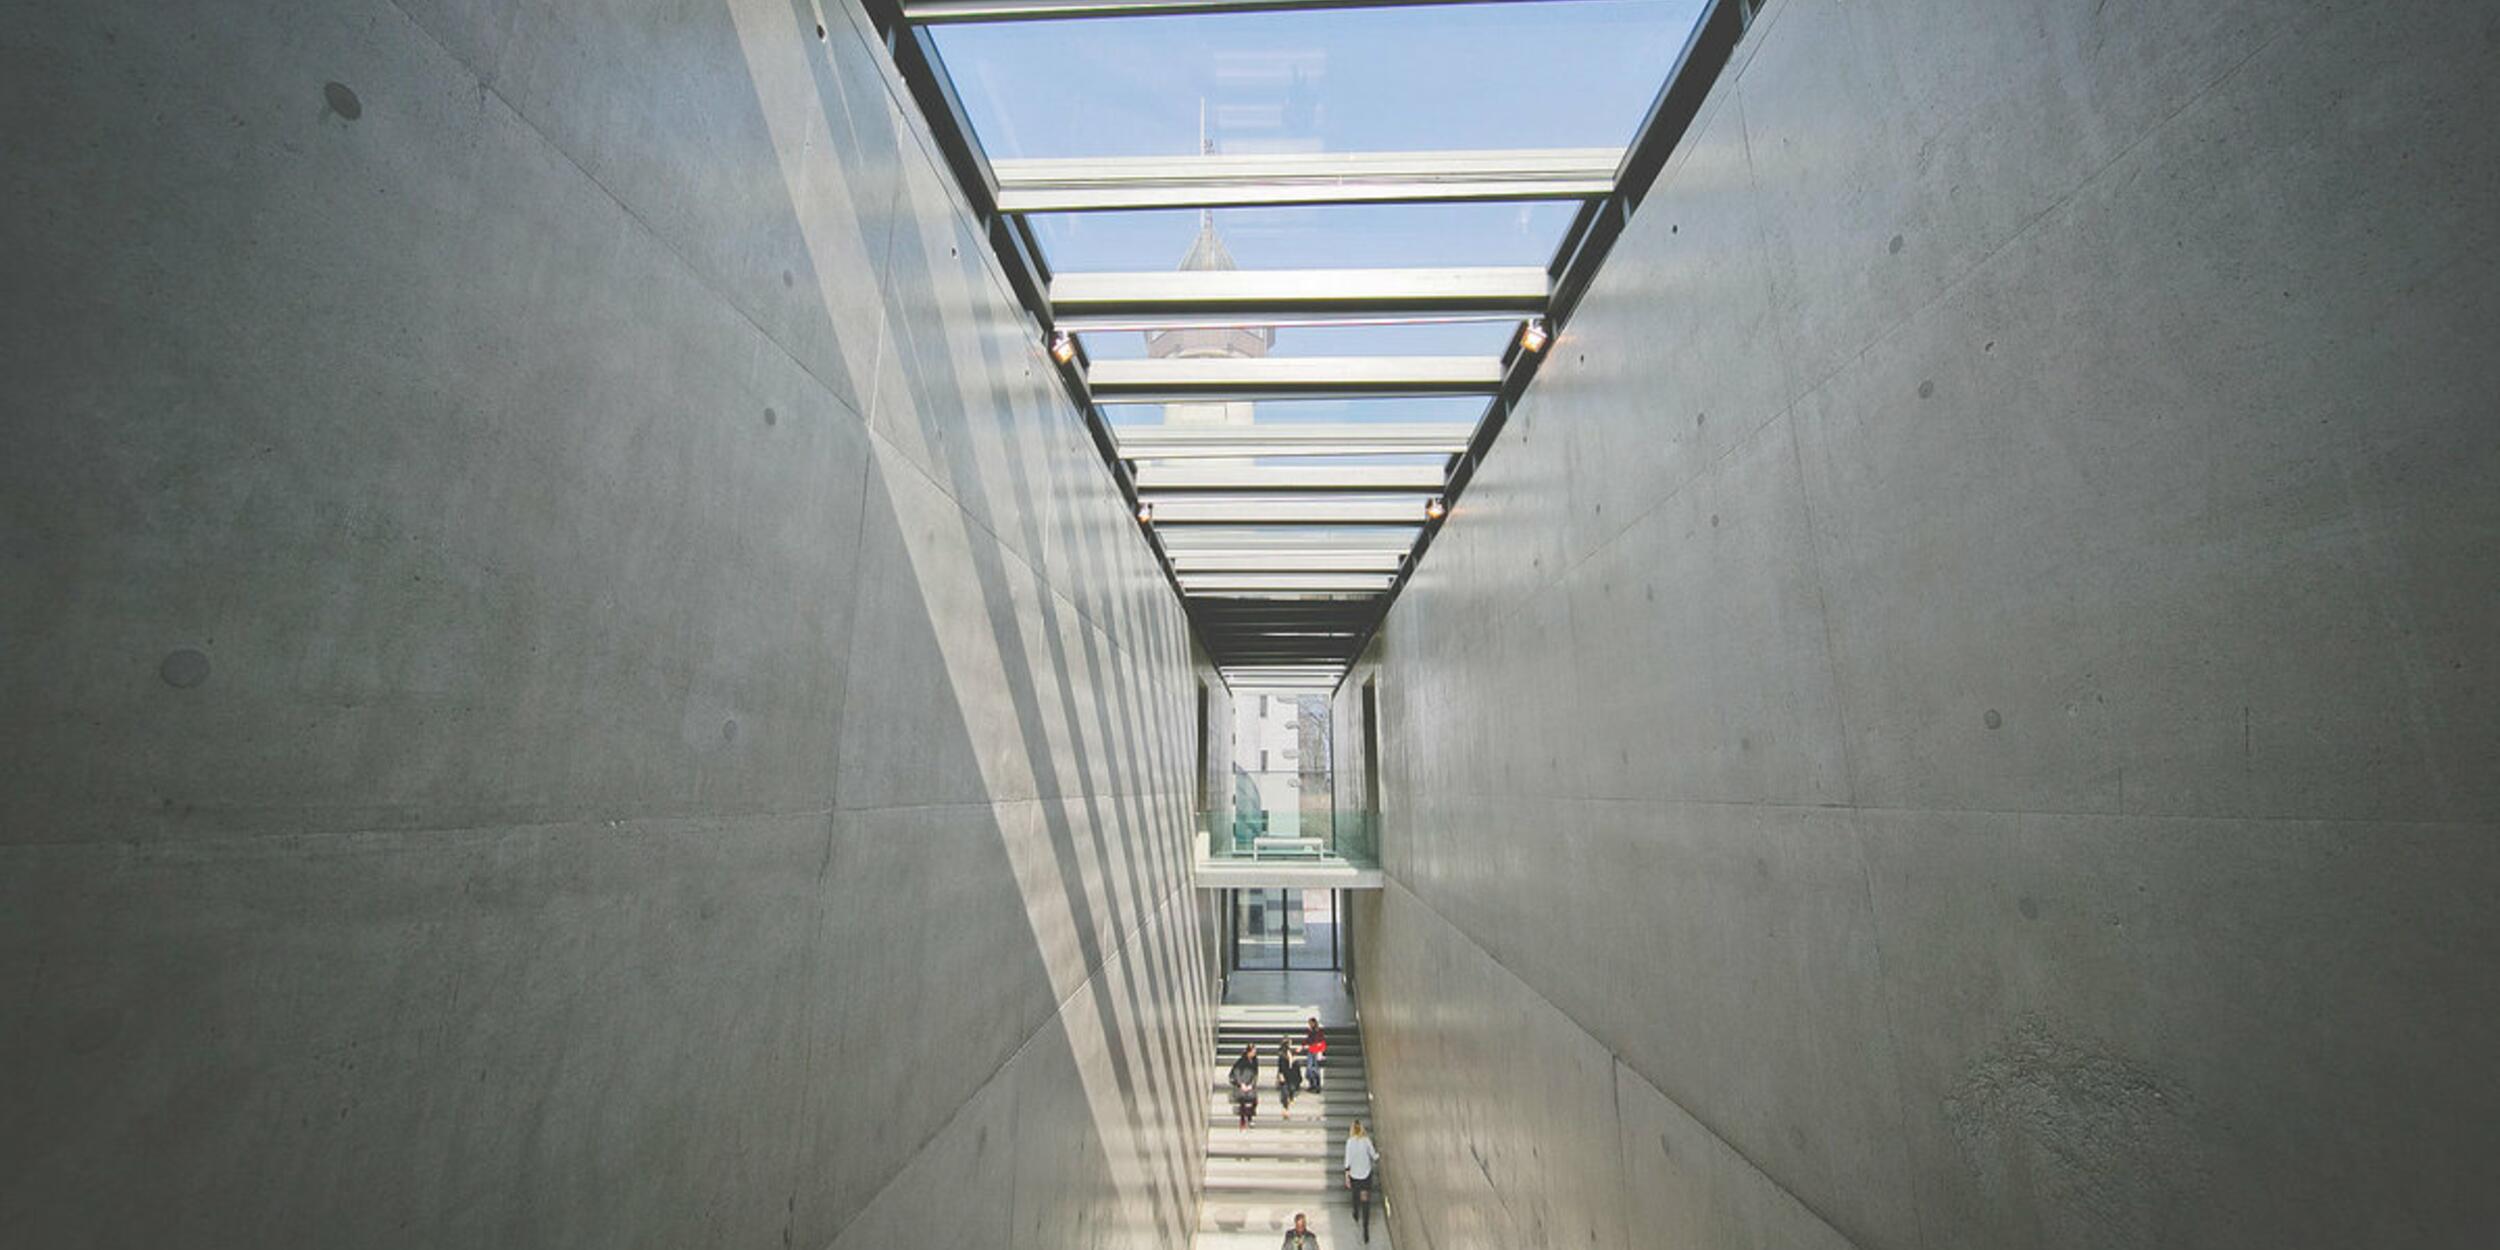 Treppenhaus Museum der Moderne, Sichtbeton und gläserne Decke | © wildbild